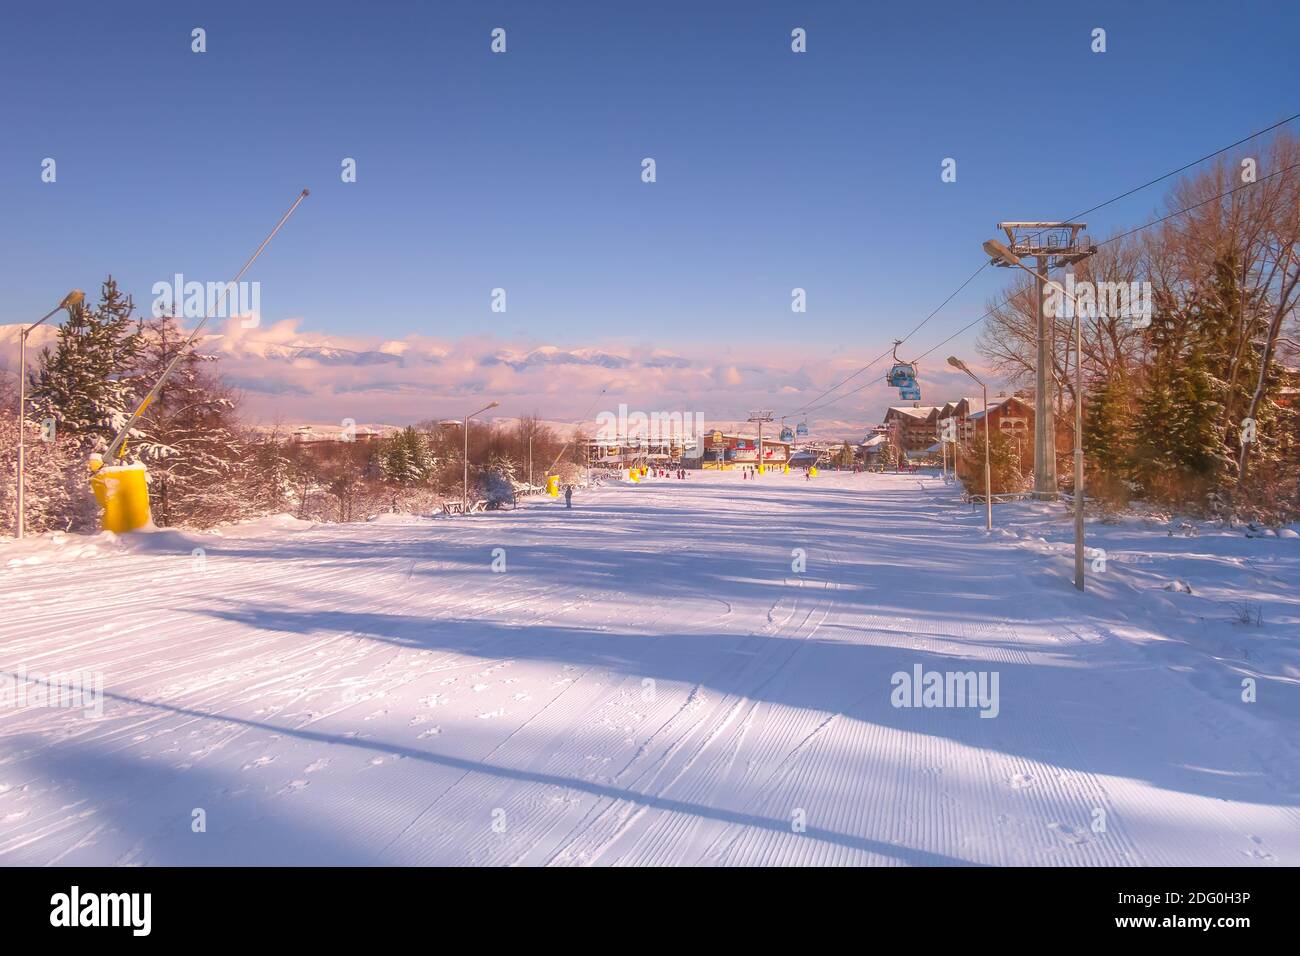 Bansko, Bulgarien - Januar 22, 2018: Winter Sonnenuntergang Skigebiet Bansko mit Skipiste, Gondelbahn Kabinen, Menschen und Berge Stockfoto